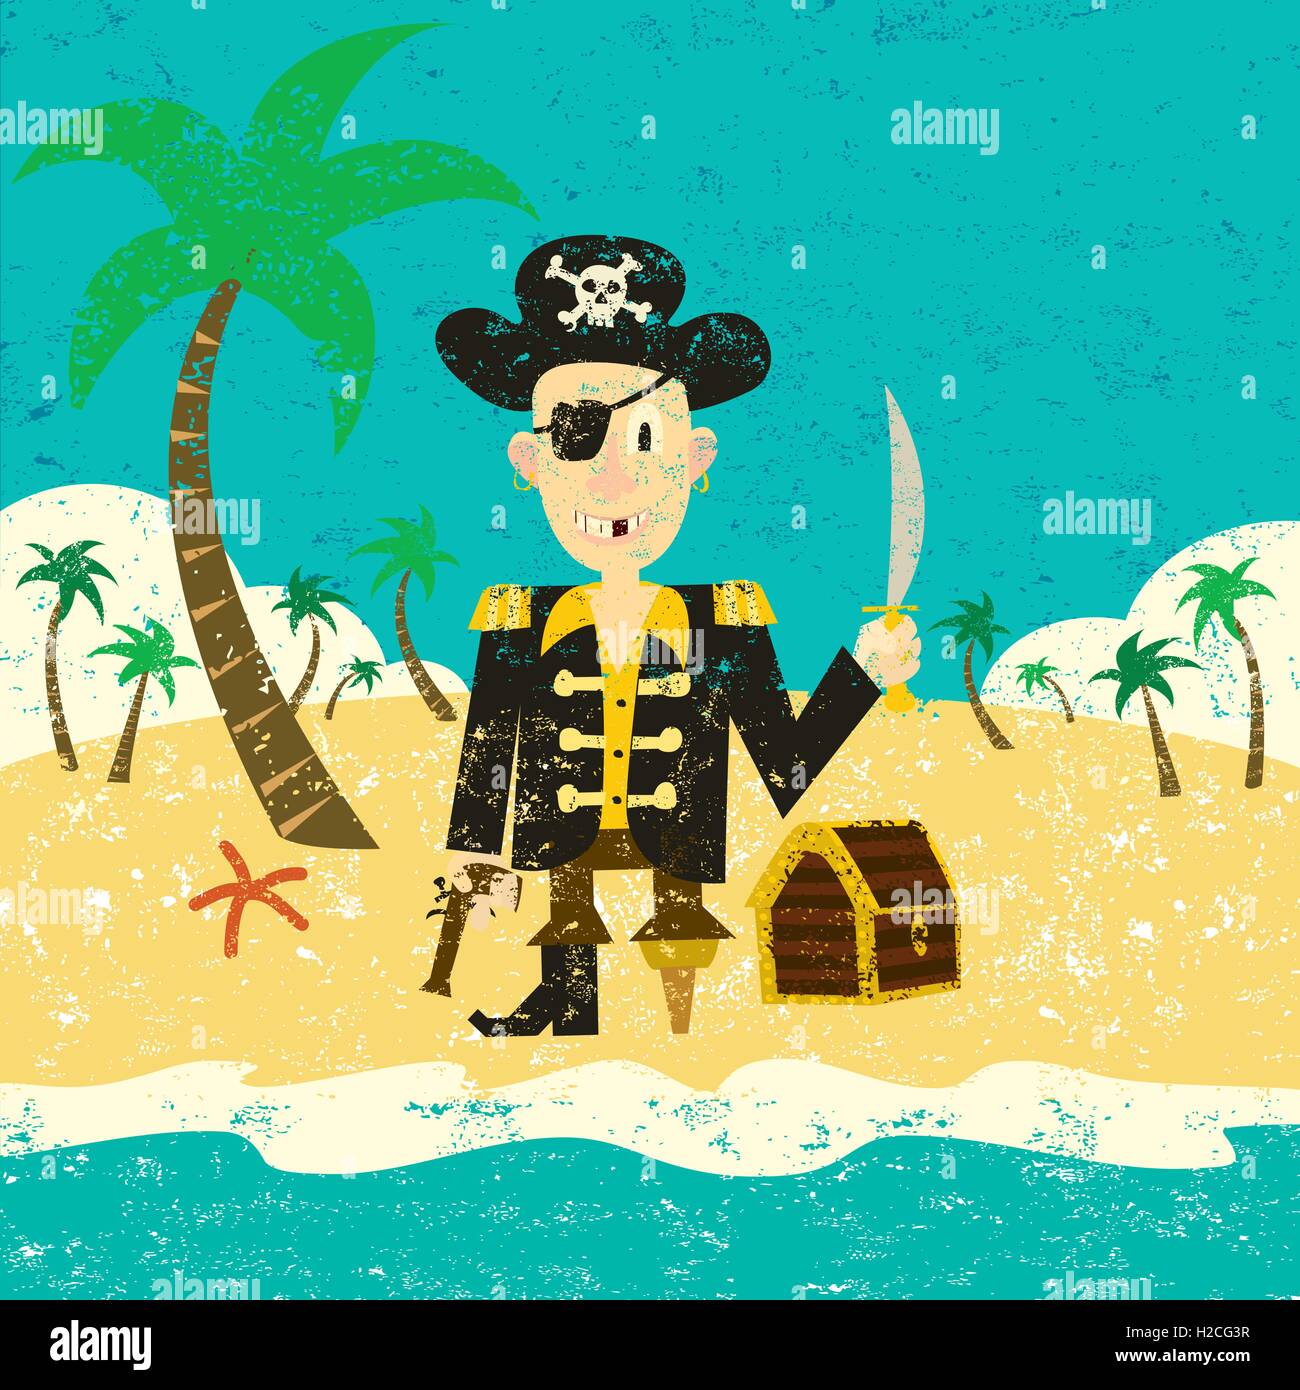 Piraten auf einer Insel mit Schatz A Pirat mit seinem Schatz auf einer einsamen Insel. Stock Vektor